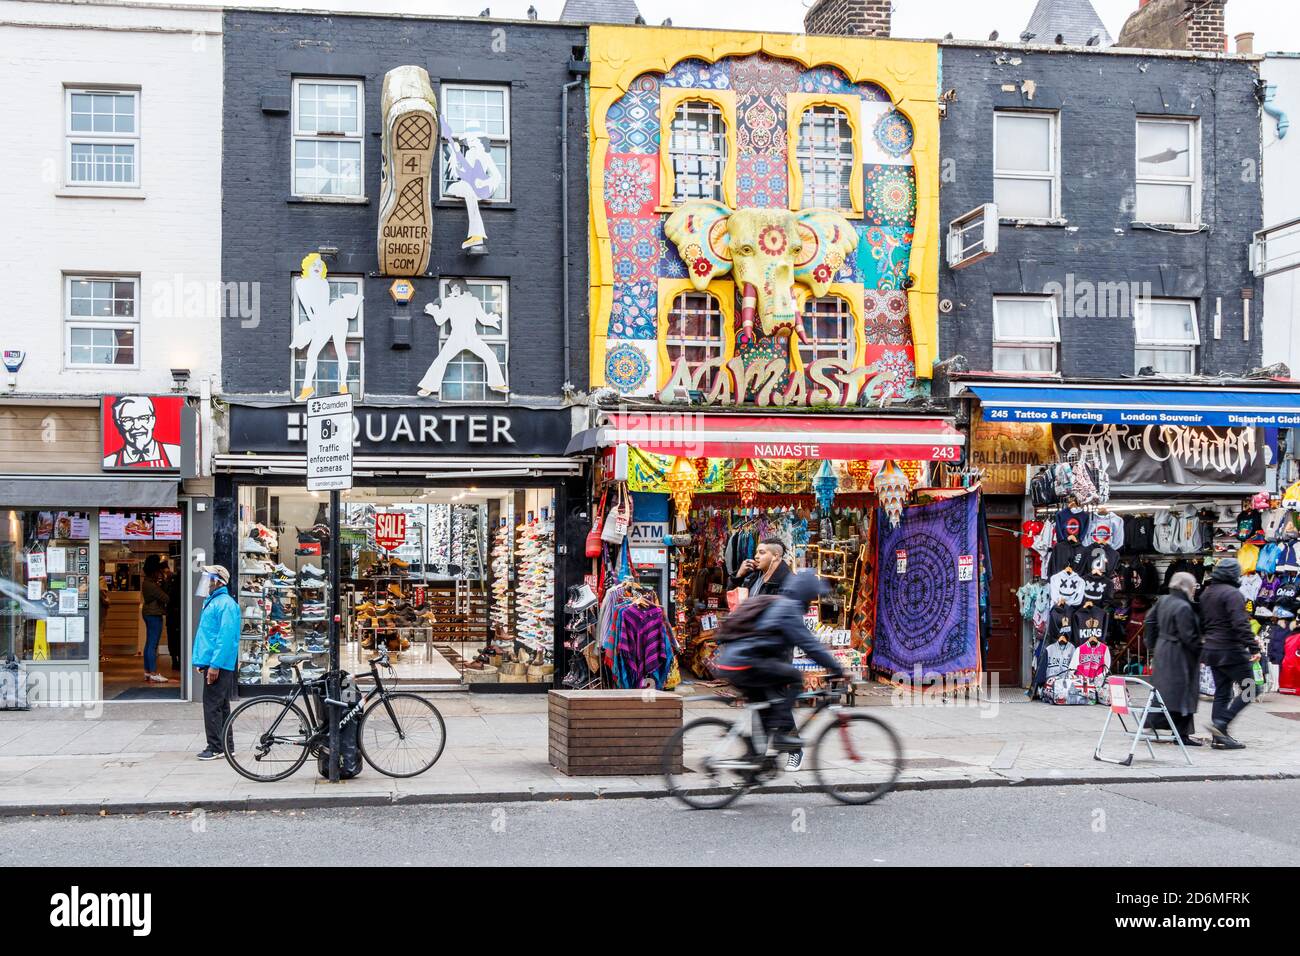 Tiendas y boutiques en la popular y moderna zona de Camden High Street, generalmente muy concurrida, durante la pandemia de coronavirus, Londres, Reino Unido Foto de stock